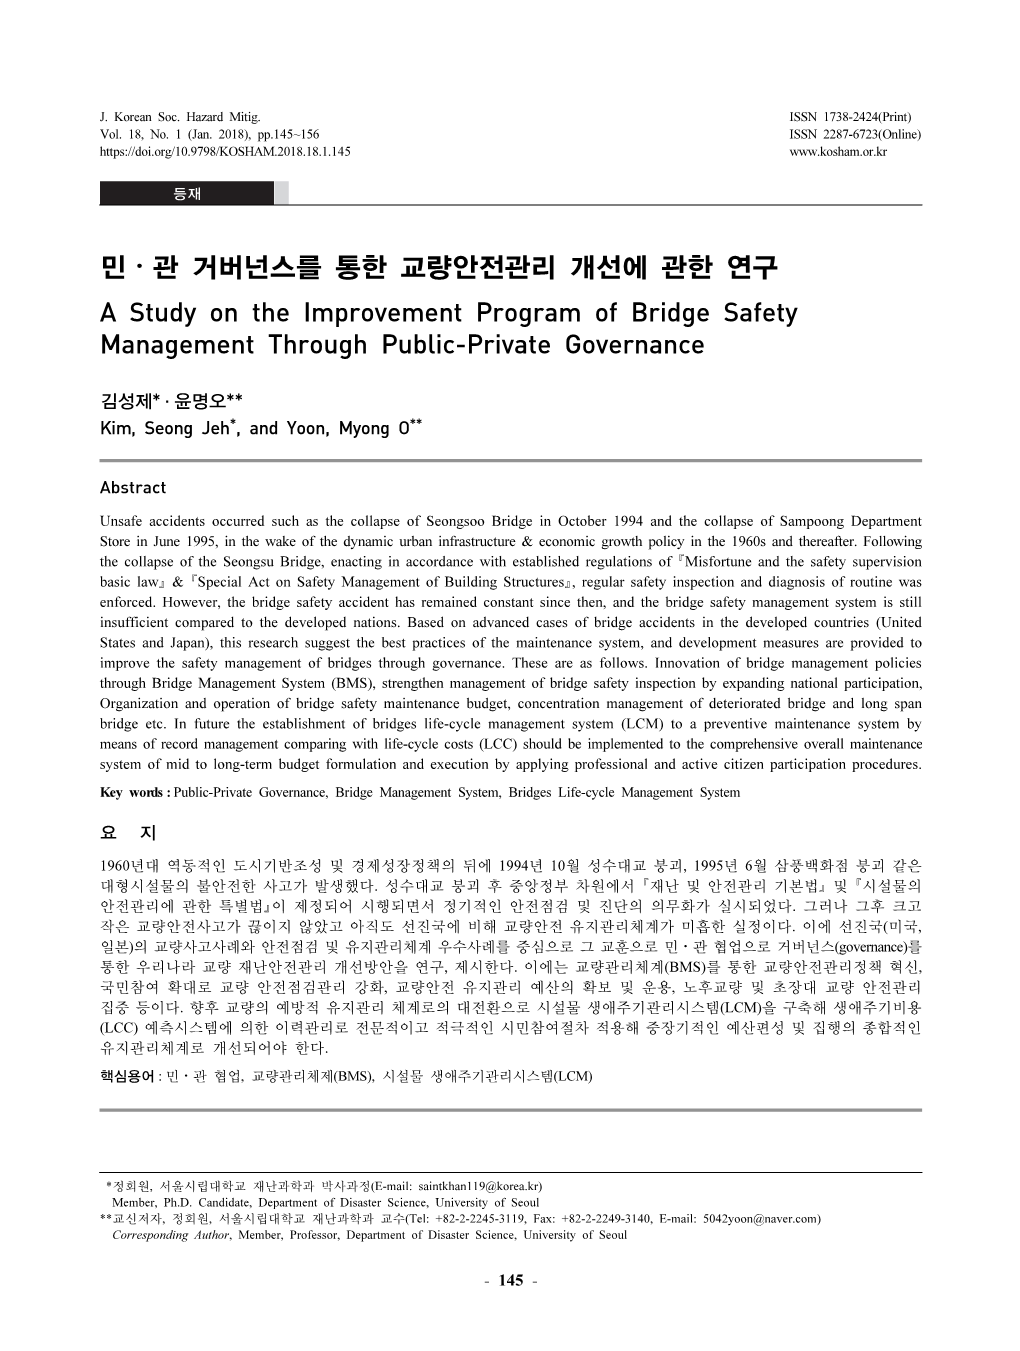 민⋅관 거버넌스를 통한 교량안전관리 개선에 관한 연구 a Study on the Improvement Program of Bridge Safety Management Through Public-Private Governance